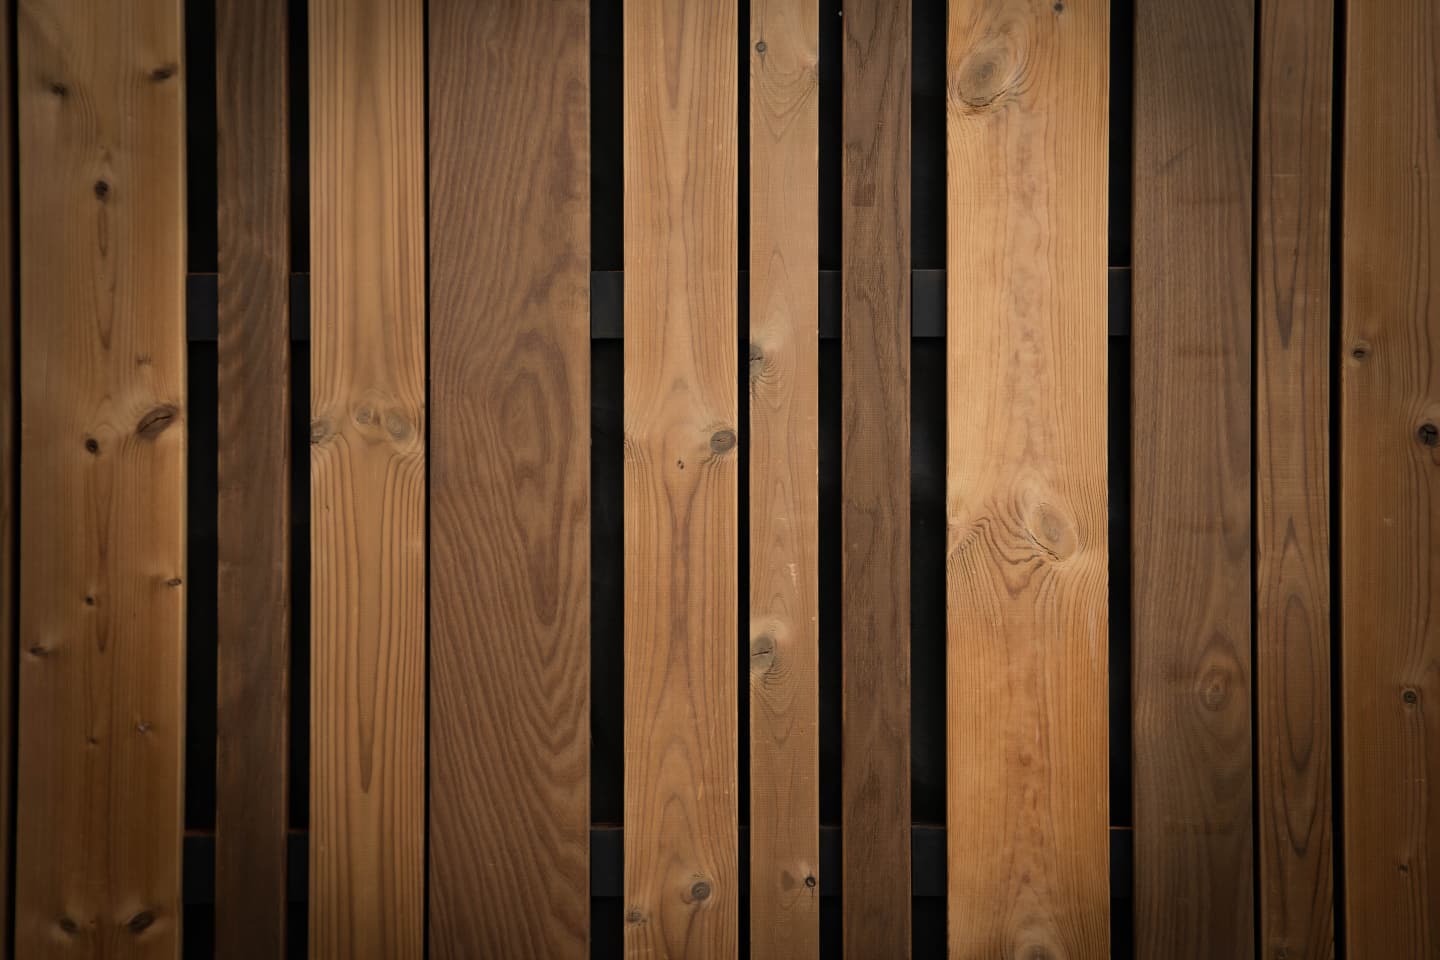 spacer bardage en bois diifférentes largeurs de lame en bois